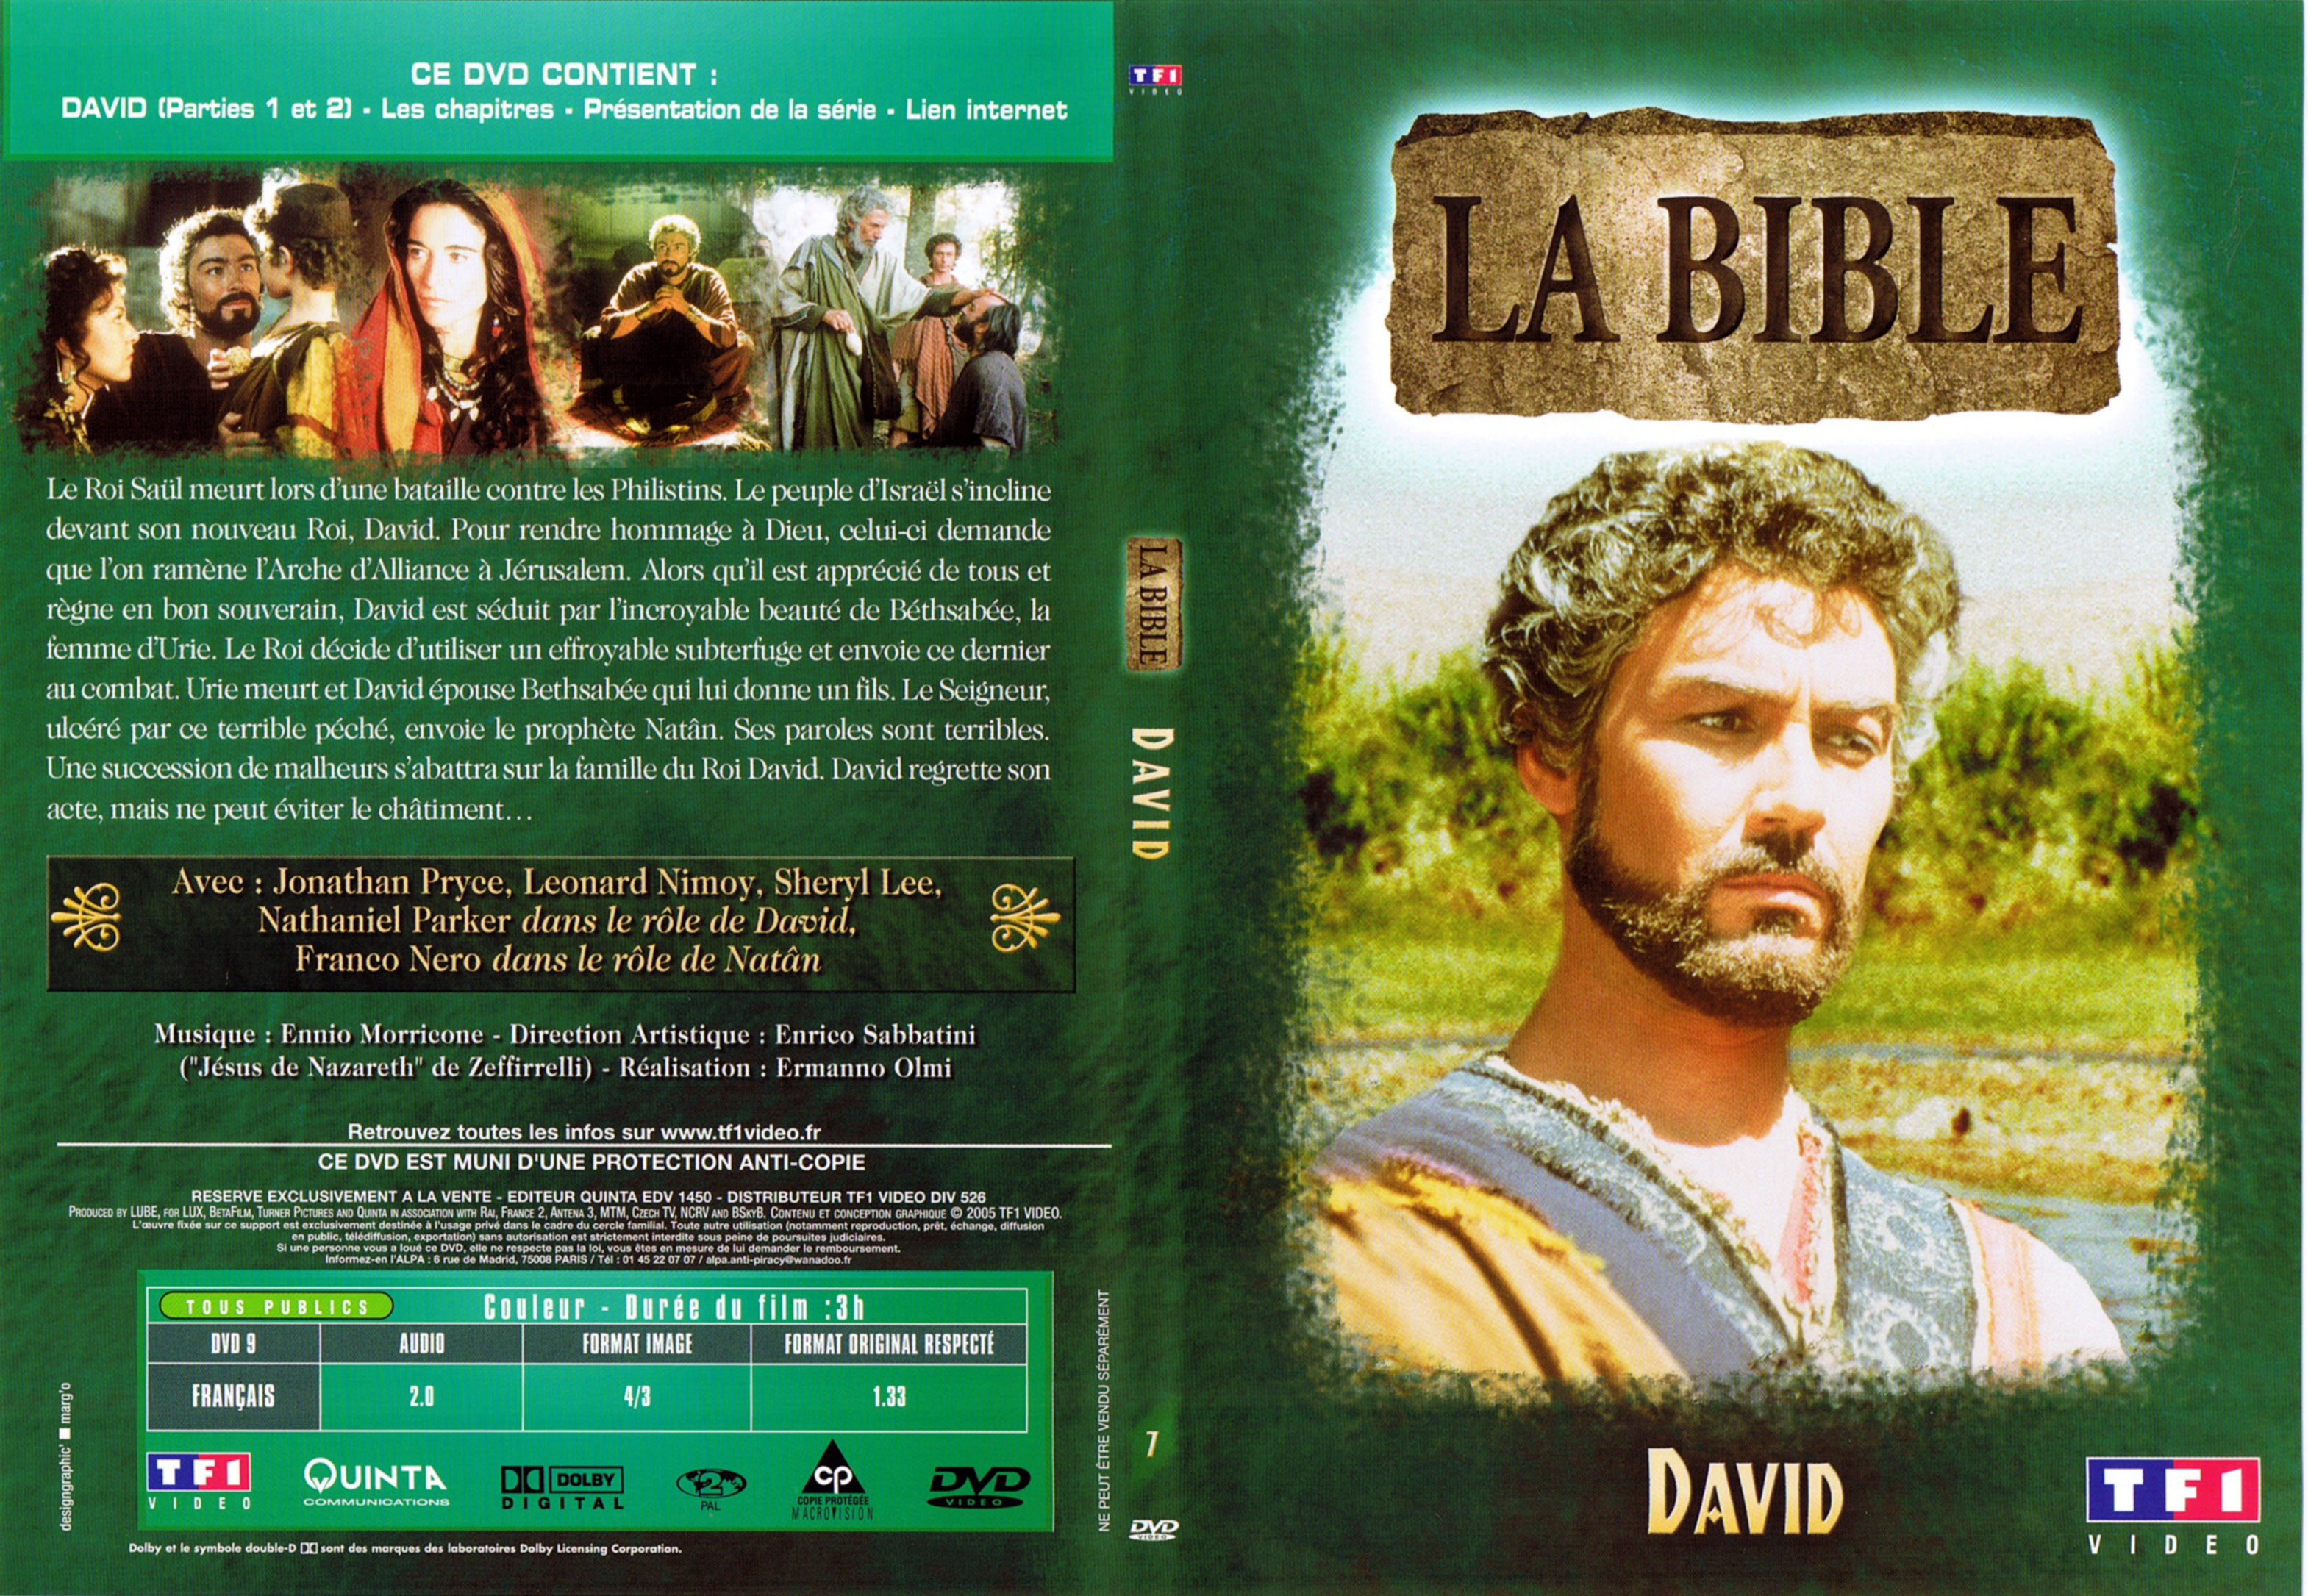 Jaquette DVD La bible - David